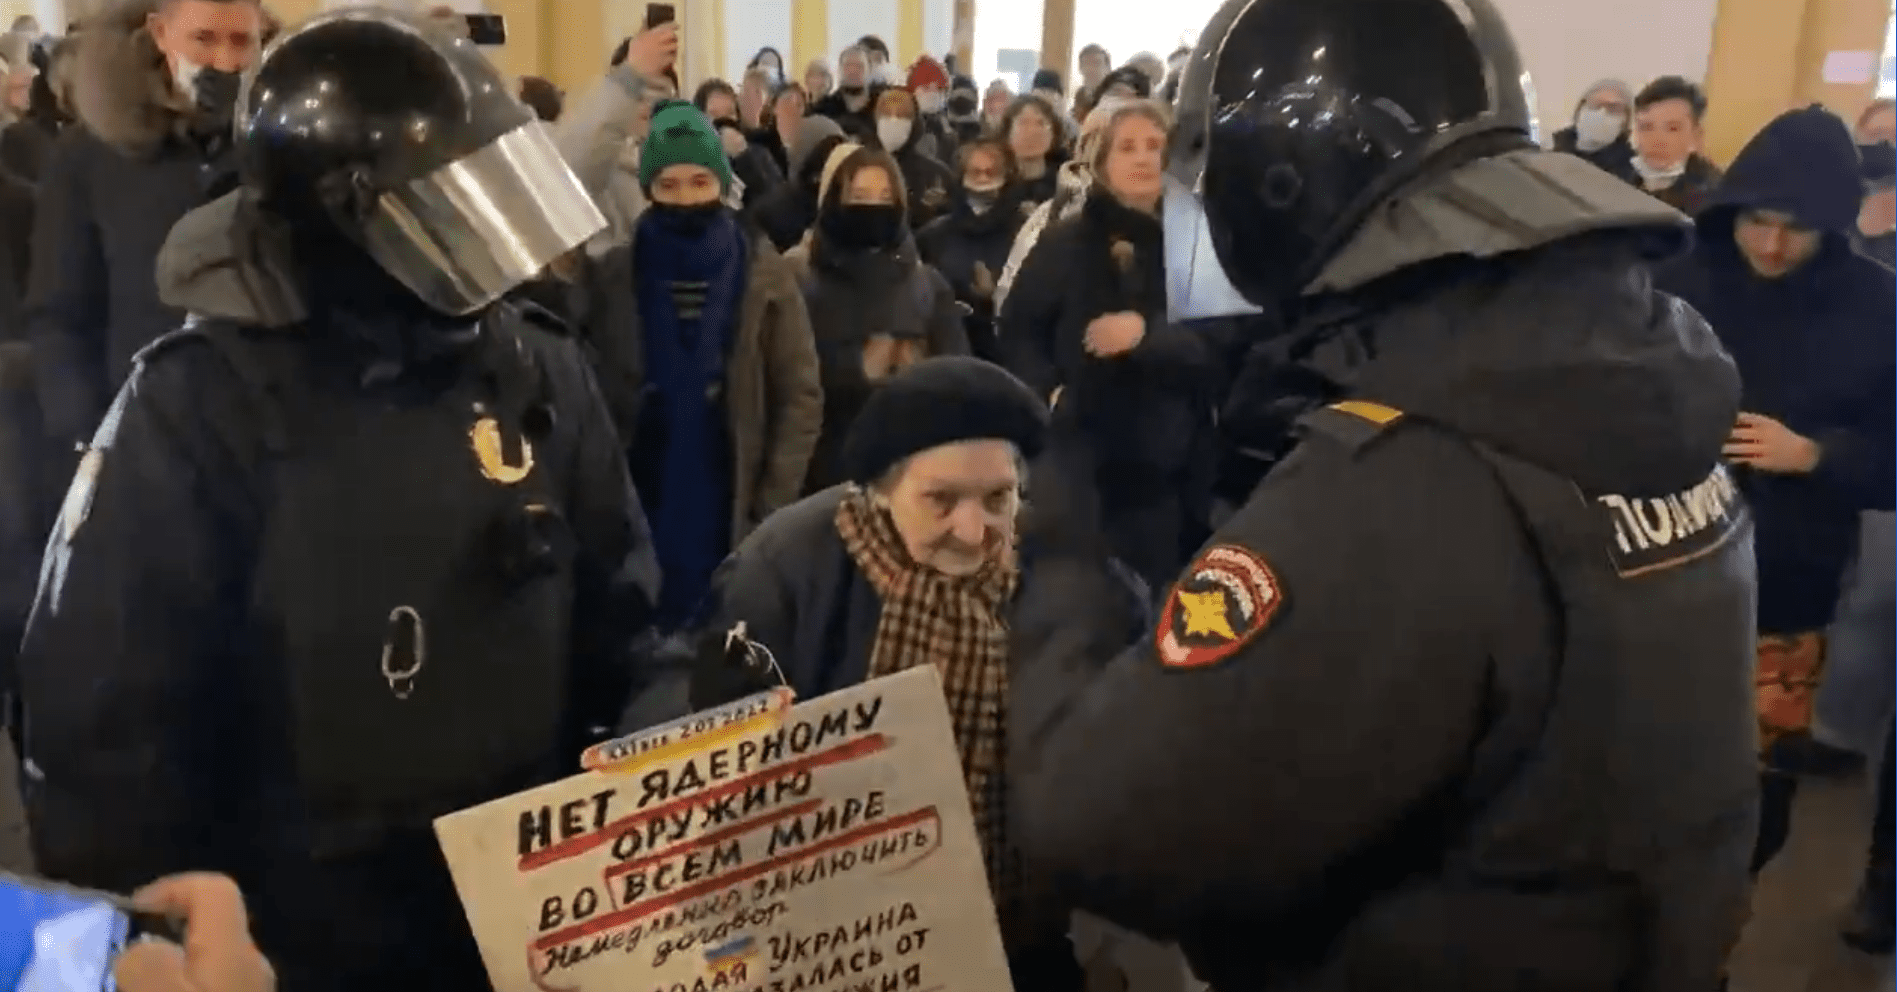 Elderly survivor of Nazi siege of Leningrad arrested for protesting Ukraine war